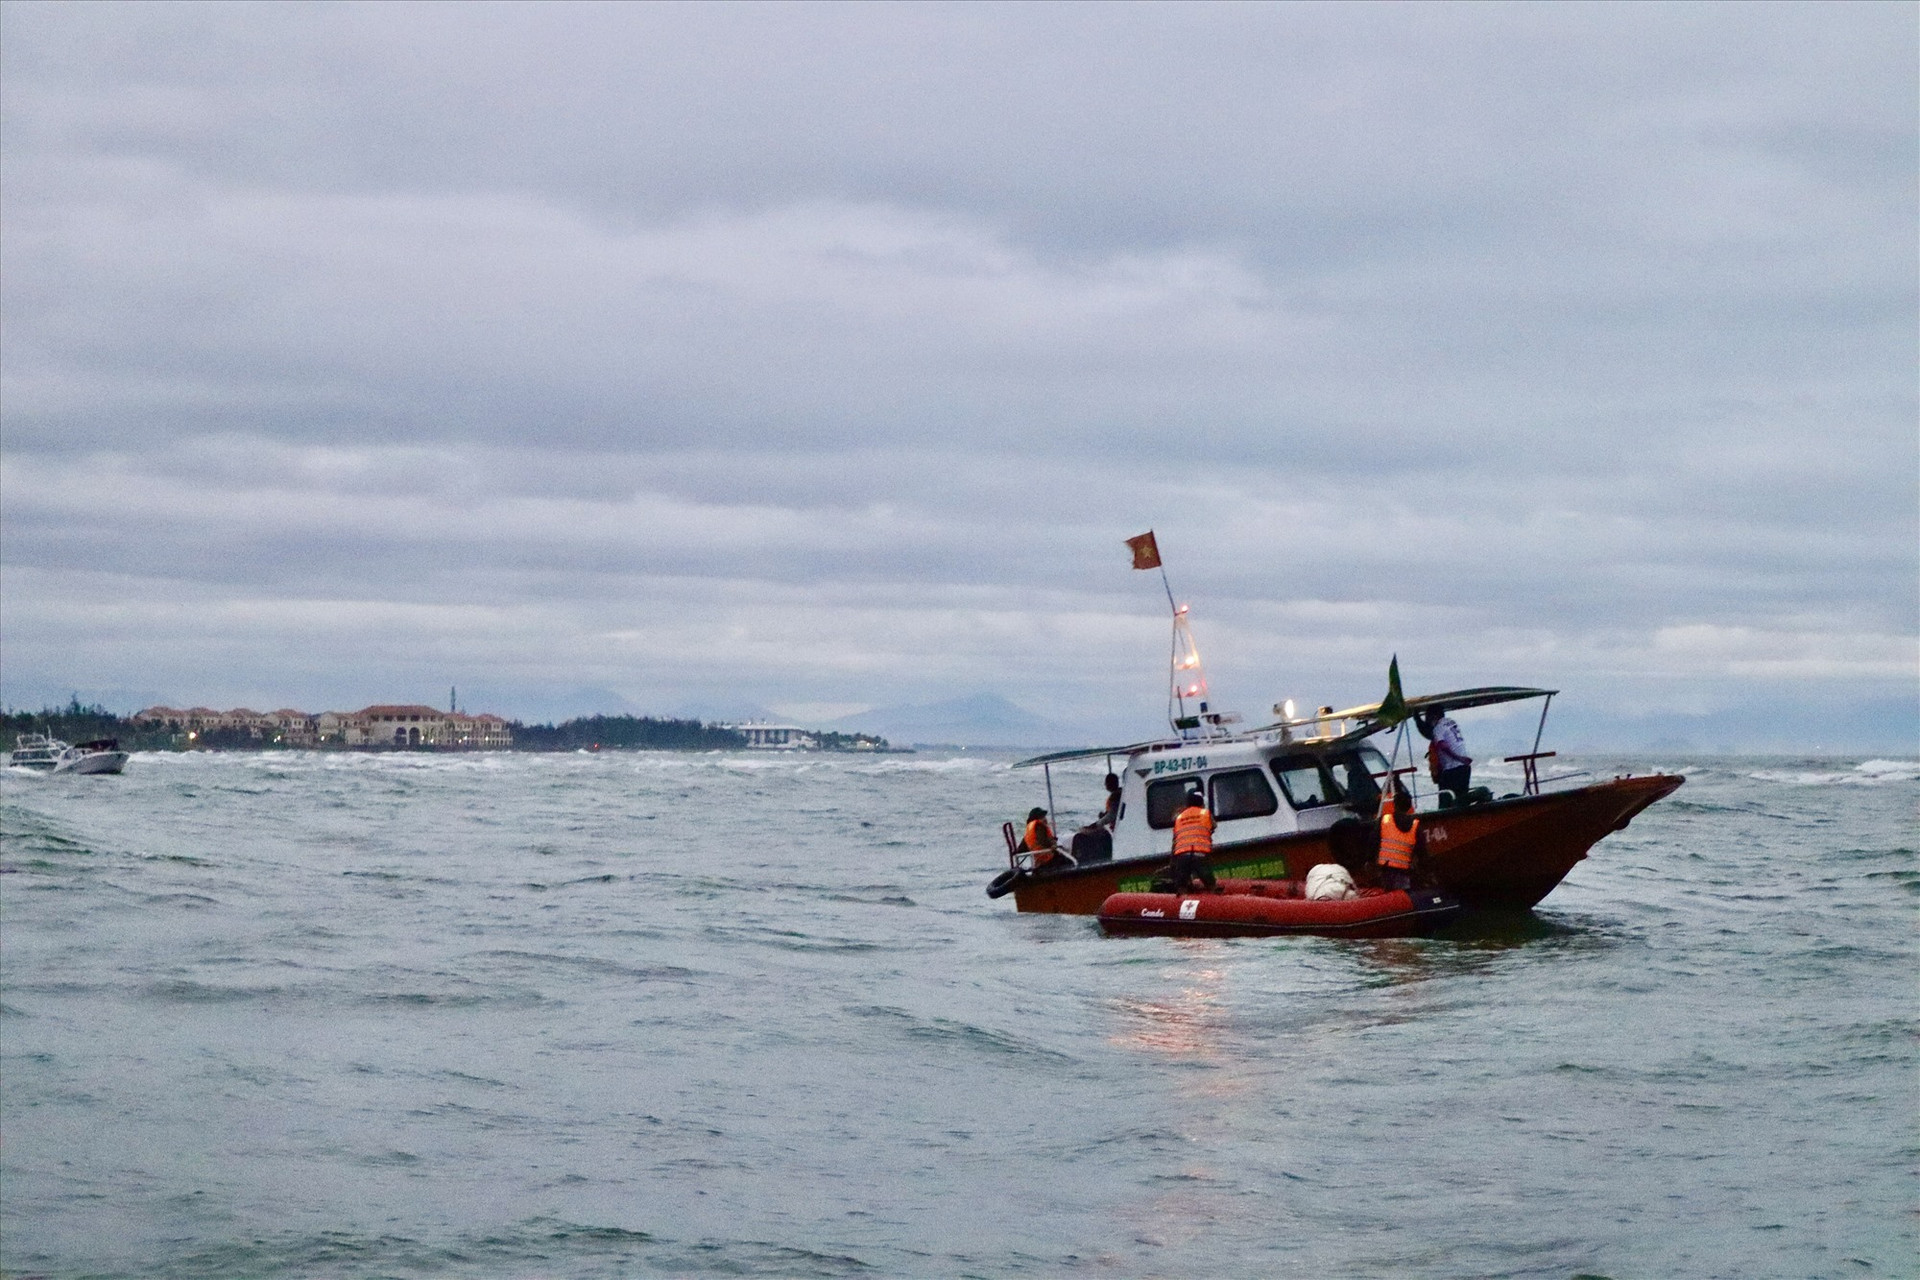 Các lực lượng cứu hộ đã tiếp cận, cứu sống được 22 nạn nhân trong vụ chìm ca nô trong điều kiện thời tiết xấu. Ảnh: T.L